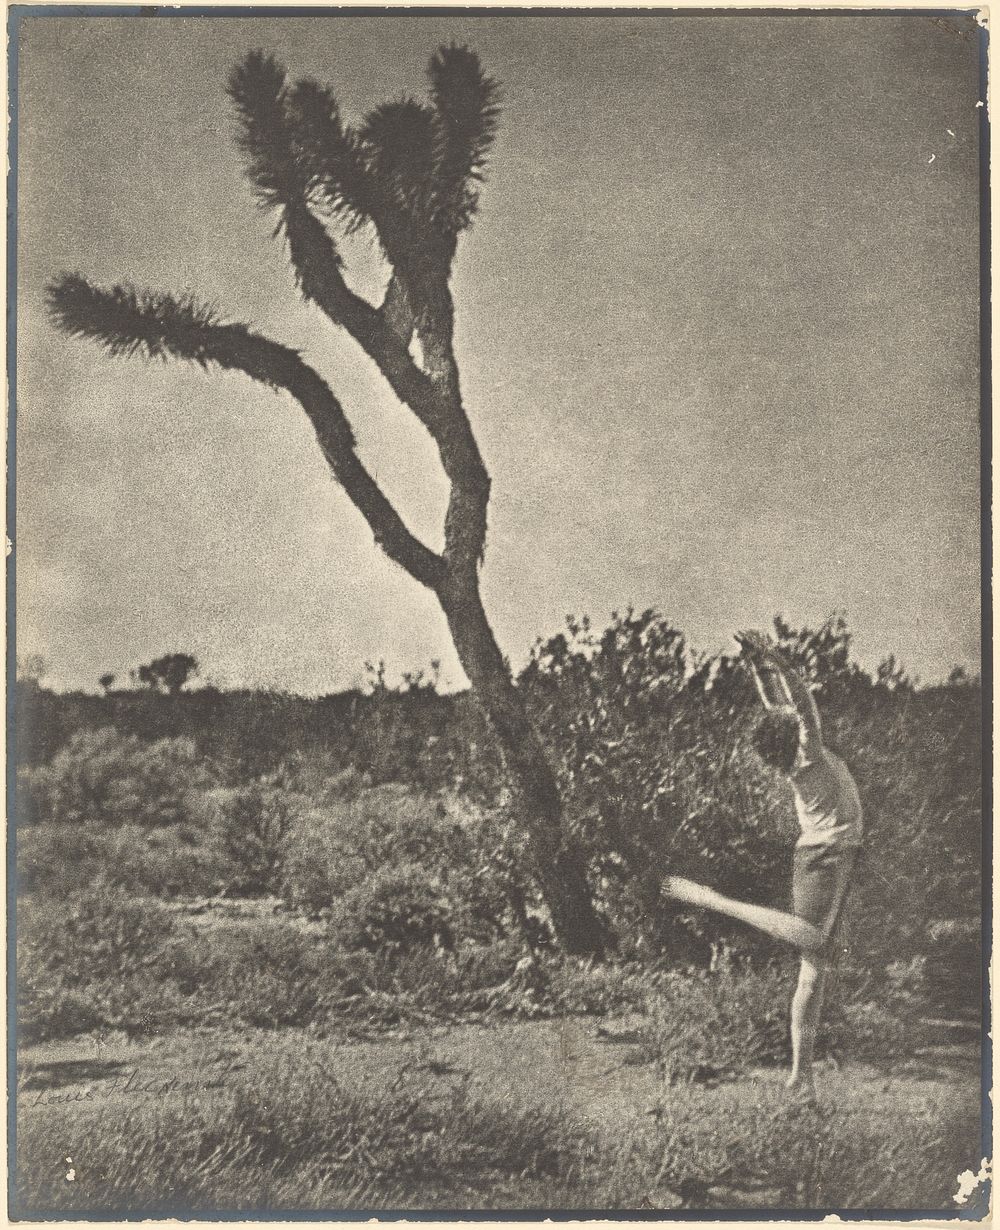 Dancer at Joshua Tree by Louis Fleckenstein